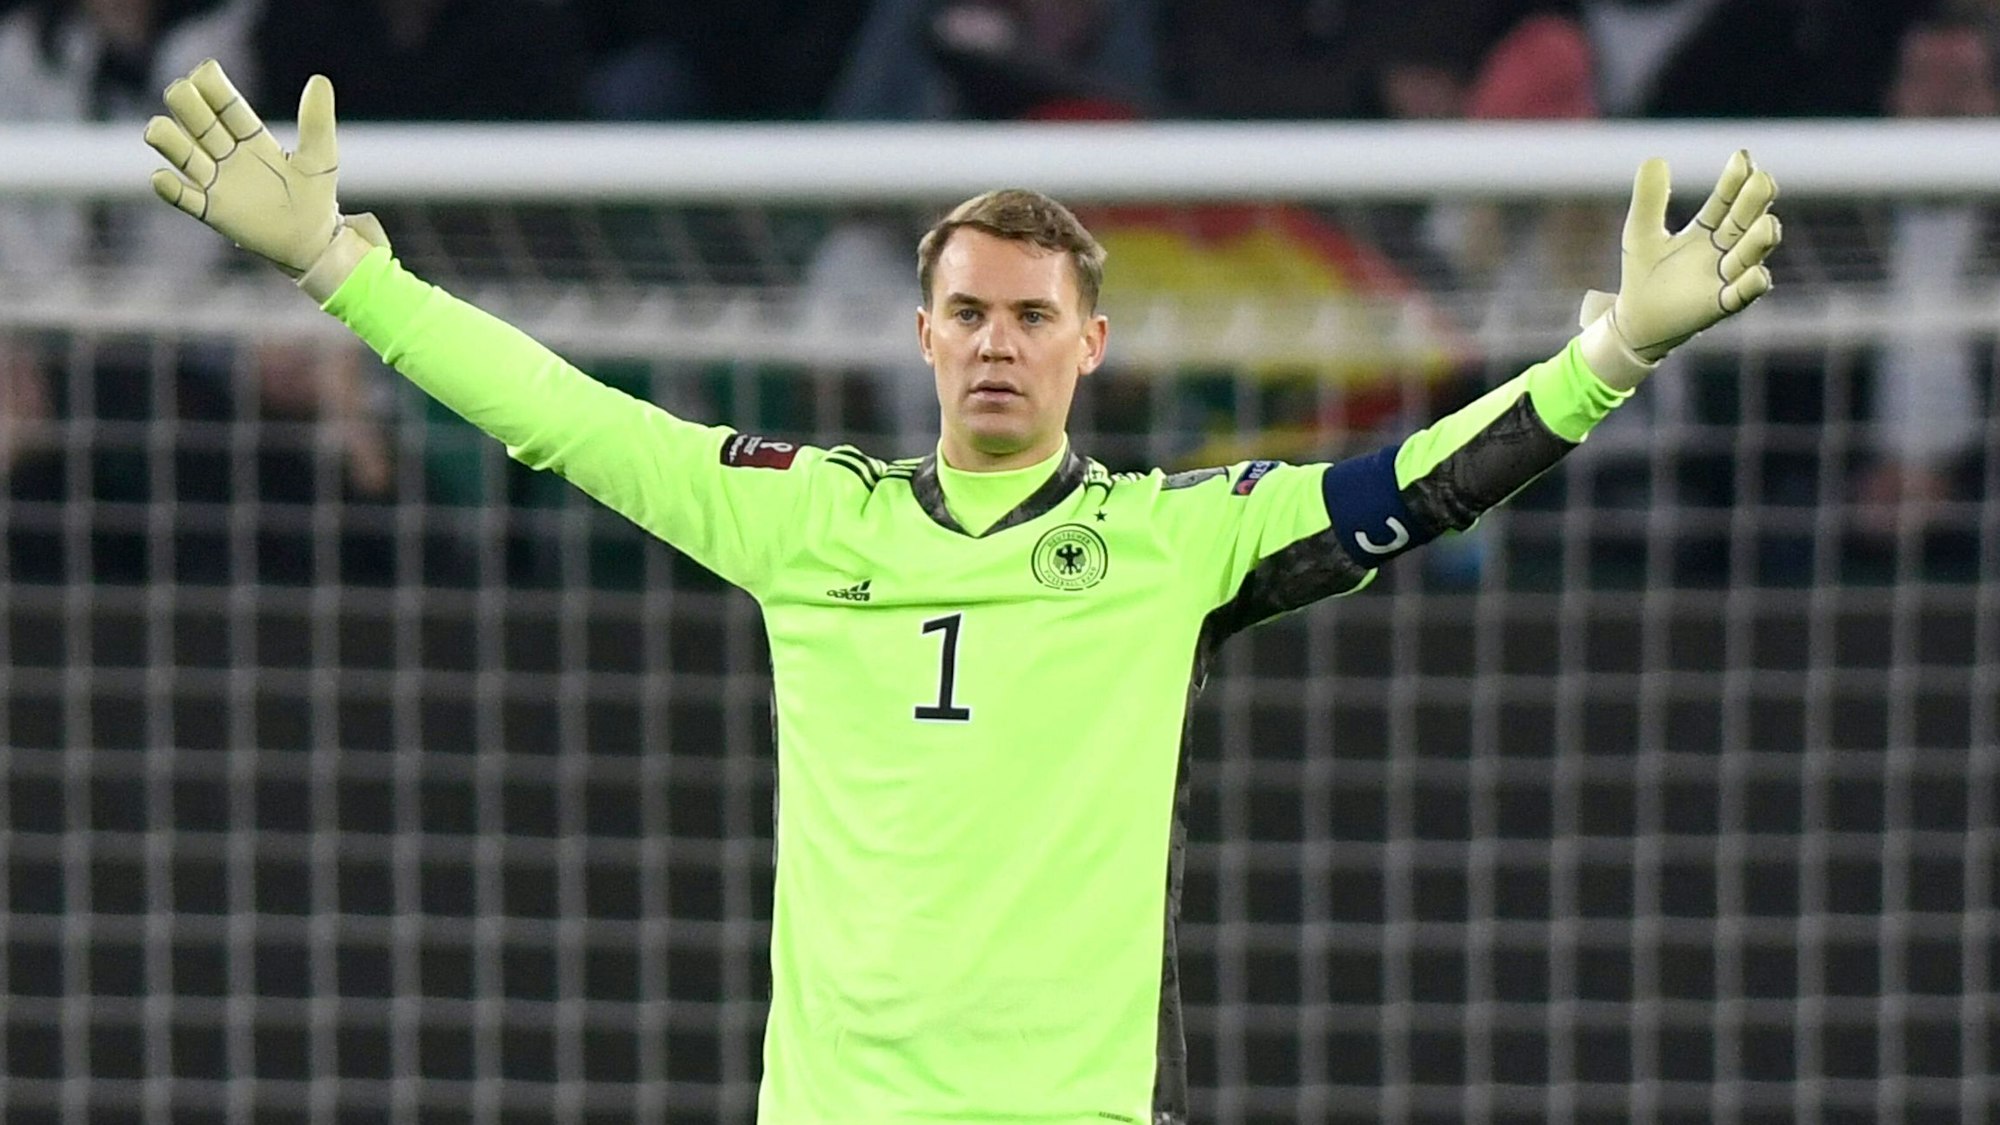  Deutschland gegen Liechtenstein 9:0, Manuel Neuer breitet seine Arme aus.